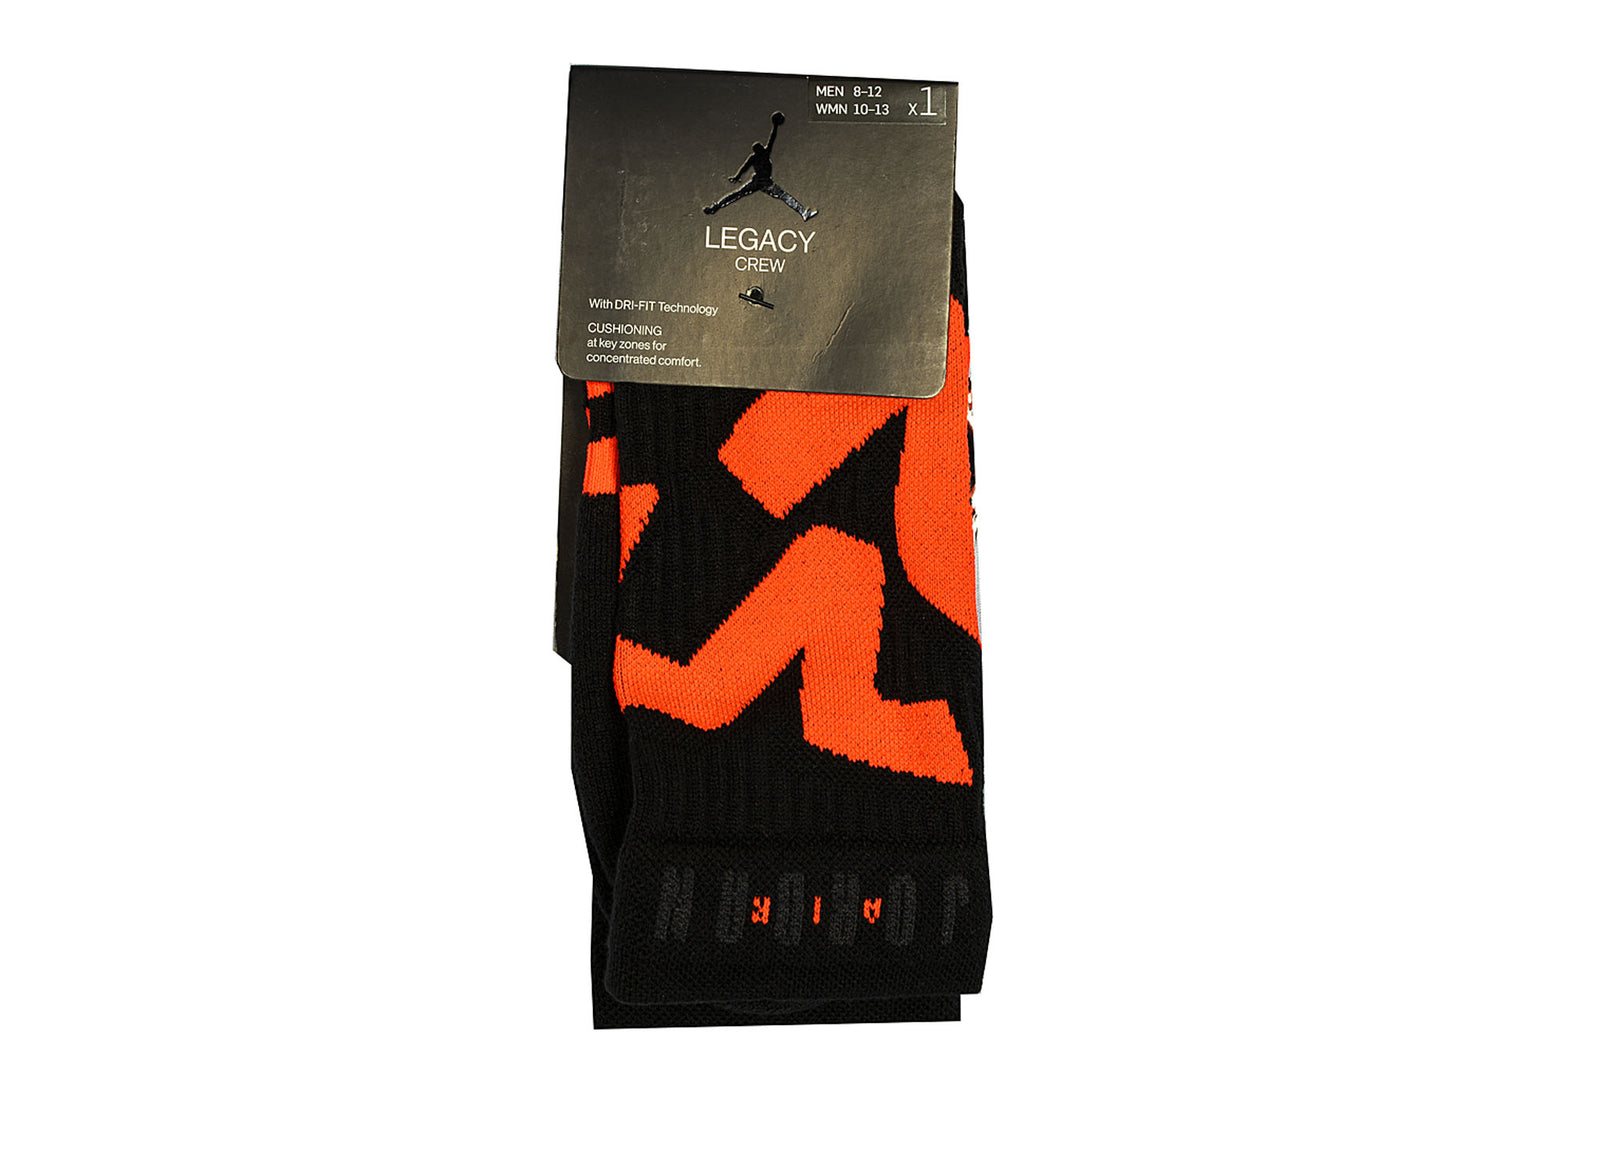 jordan infrared socks